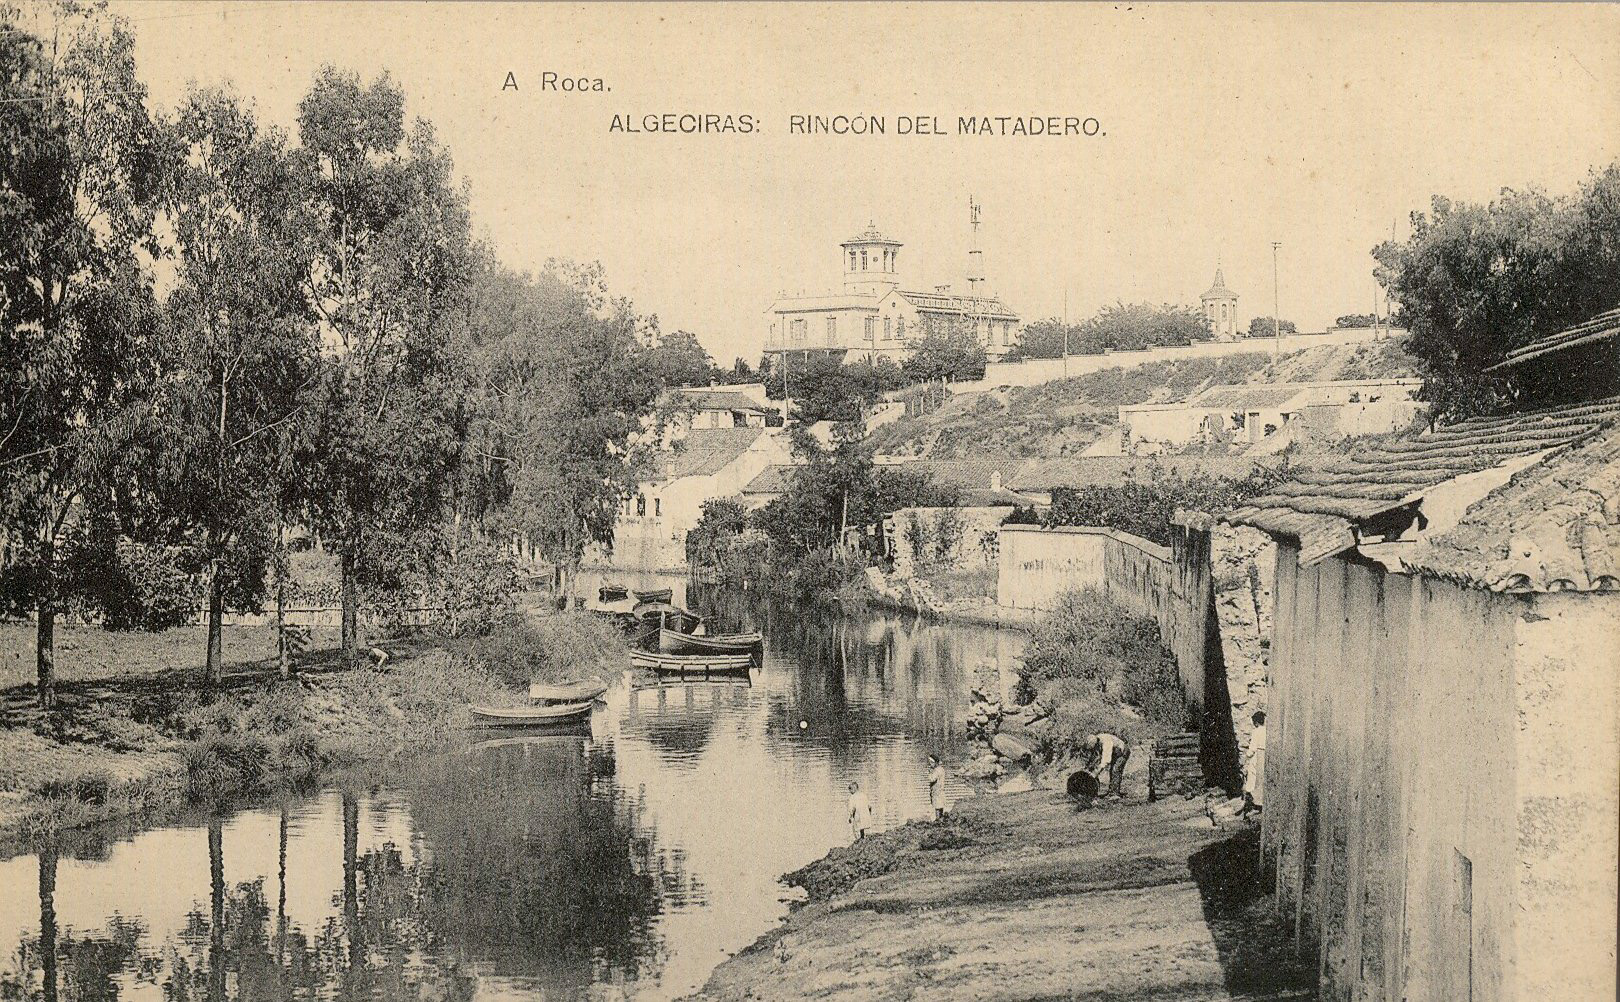 ALGECIRAS: Rincón del matadero. 1922 (DJ07552)